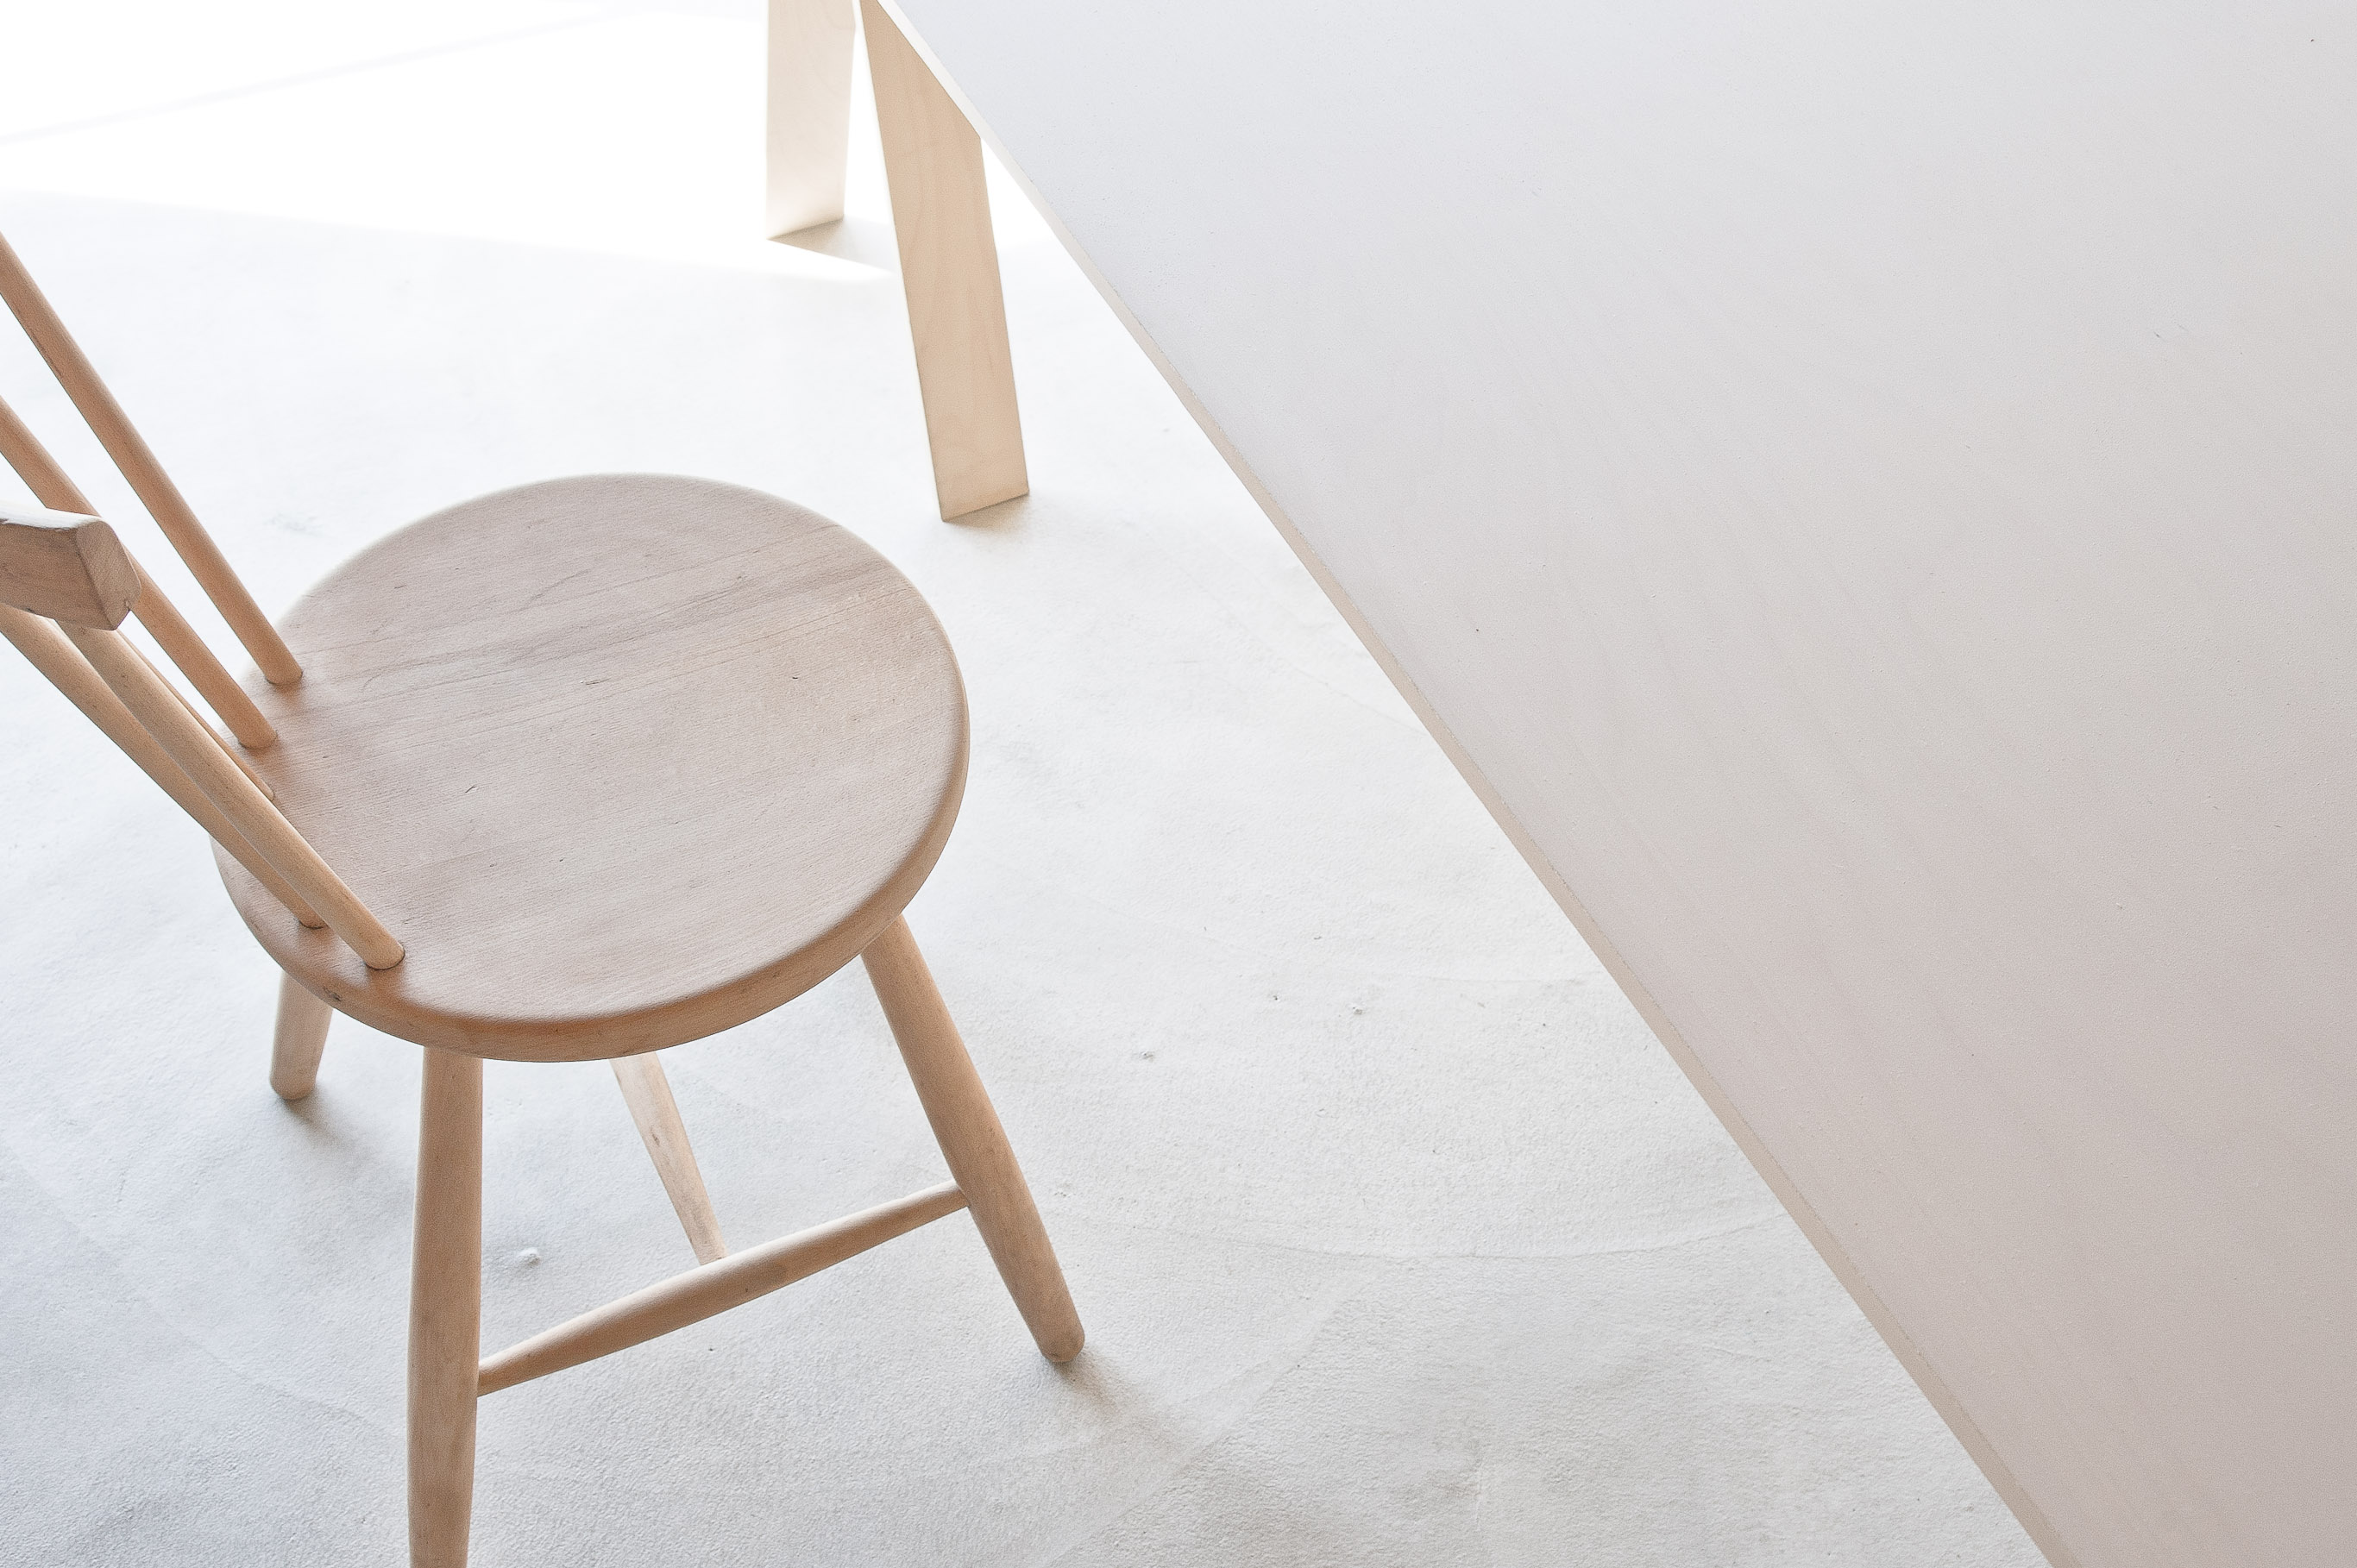 合板テーブル / Folding Table made of one plywood